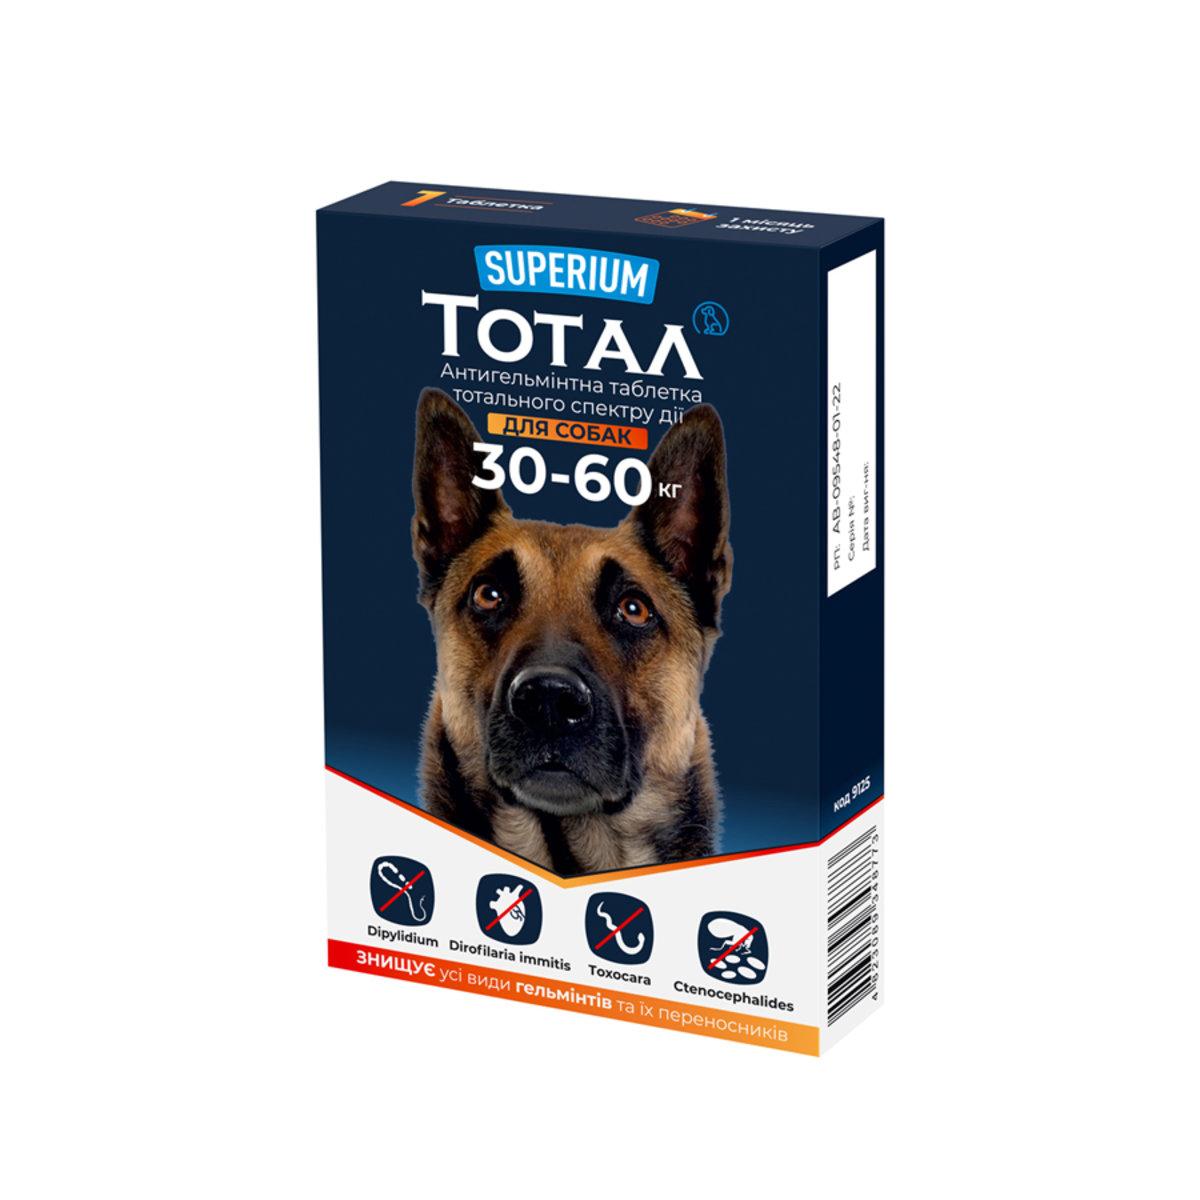 Тотал Суперіум для собак вагою 30-60 кг антигельмінтик тотального спектру дії, 1 таблетка